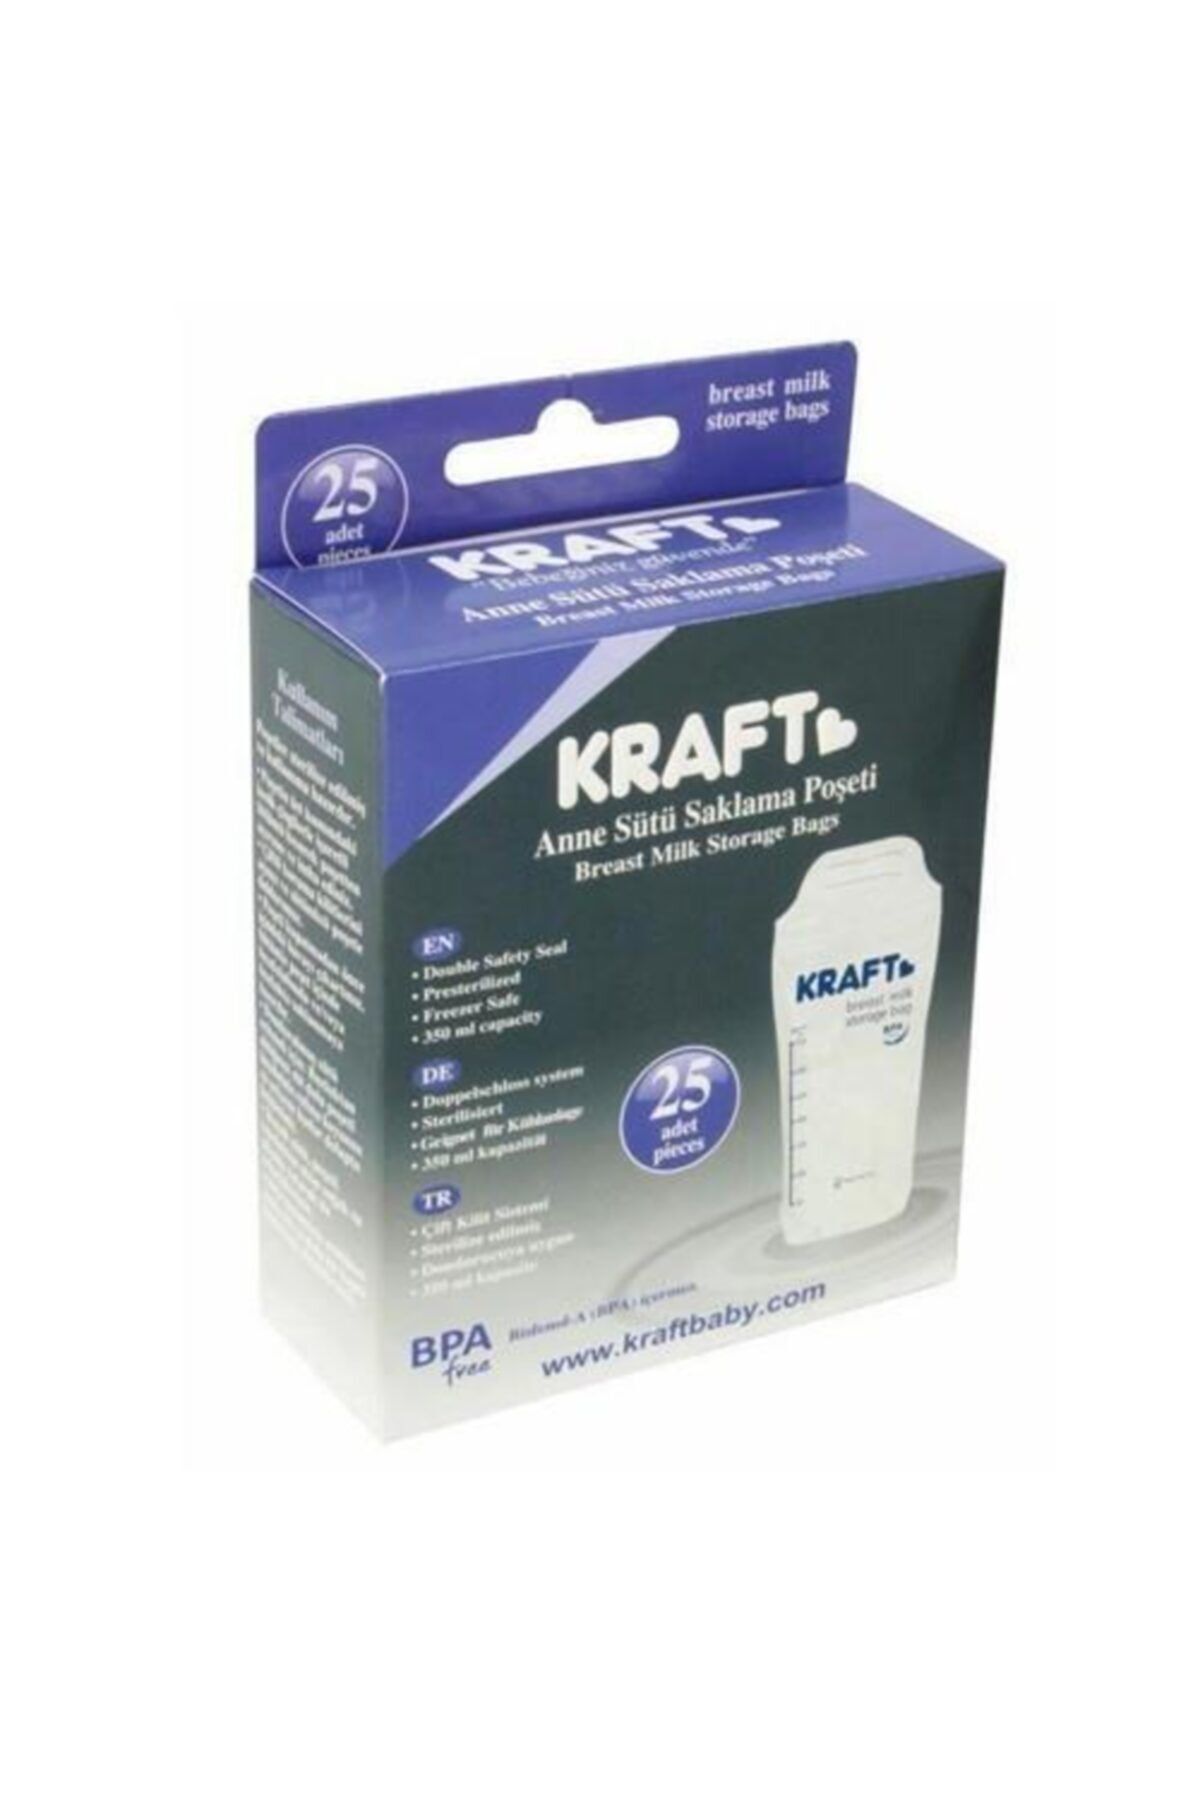 Kraft Beyaz Süt Saklama Poşeti 25 Adet